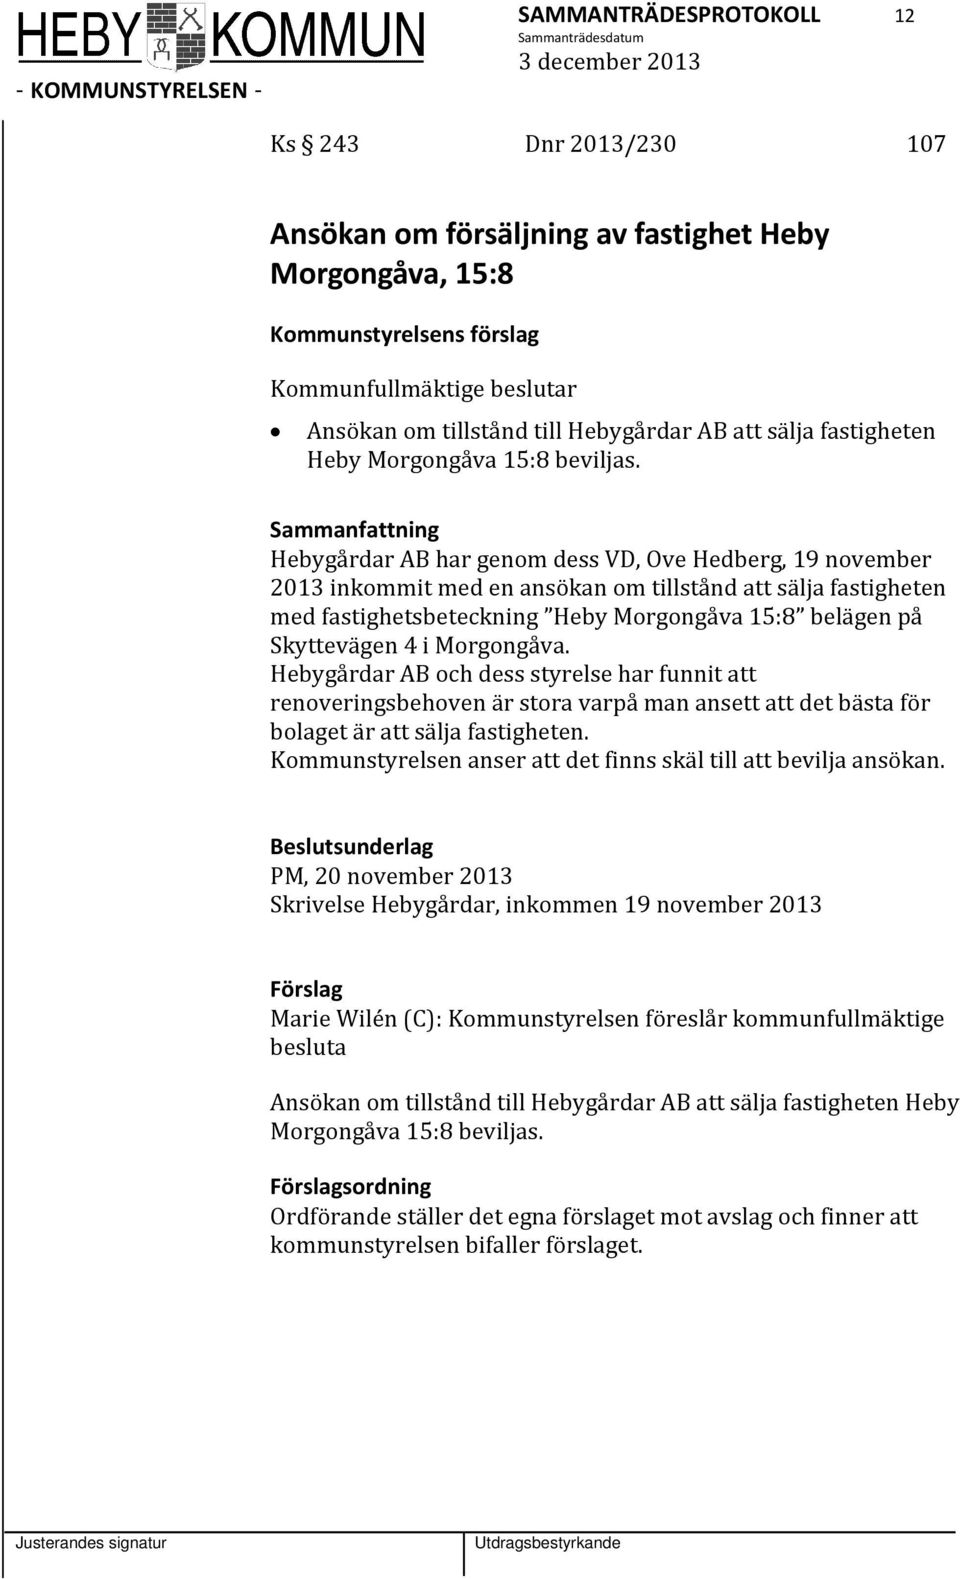 Sammanfattning Hebygårdar AB har genom dess VD, Ove Hedberg, 19 november 2013 inkommit med en ansökan om tillstånd att sälja fastigheten med fastighetsbeteckning Heby Morgongåva 15:8 belägen på